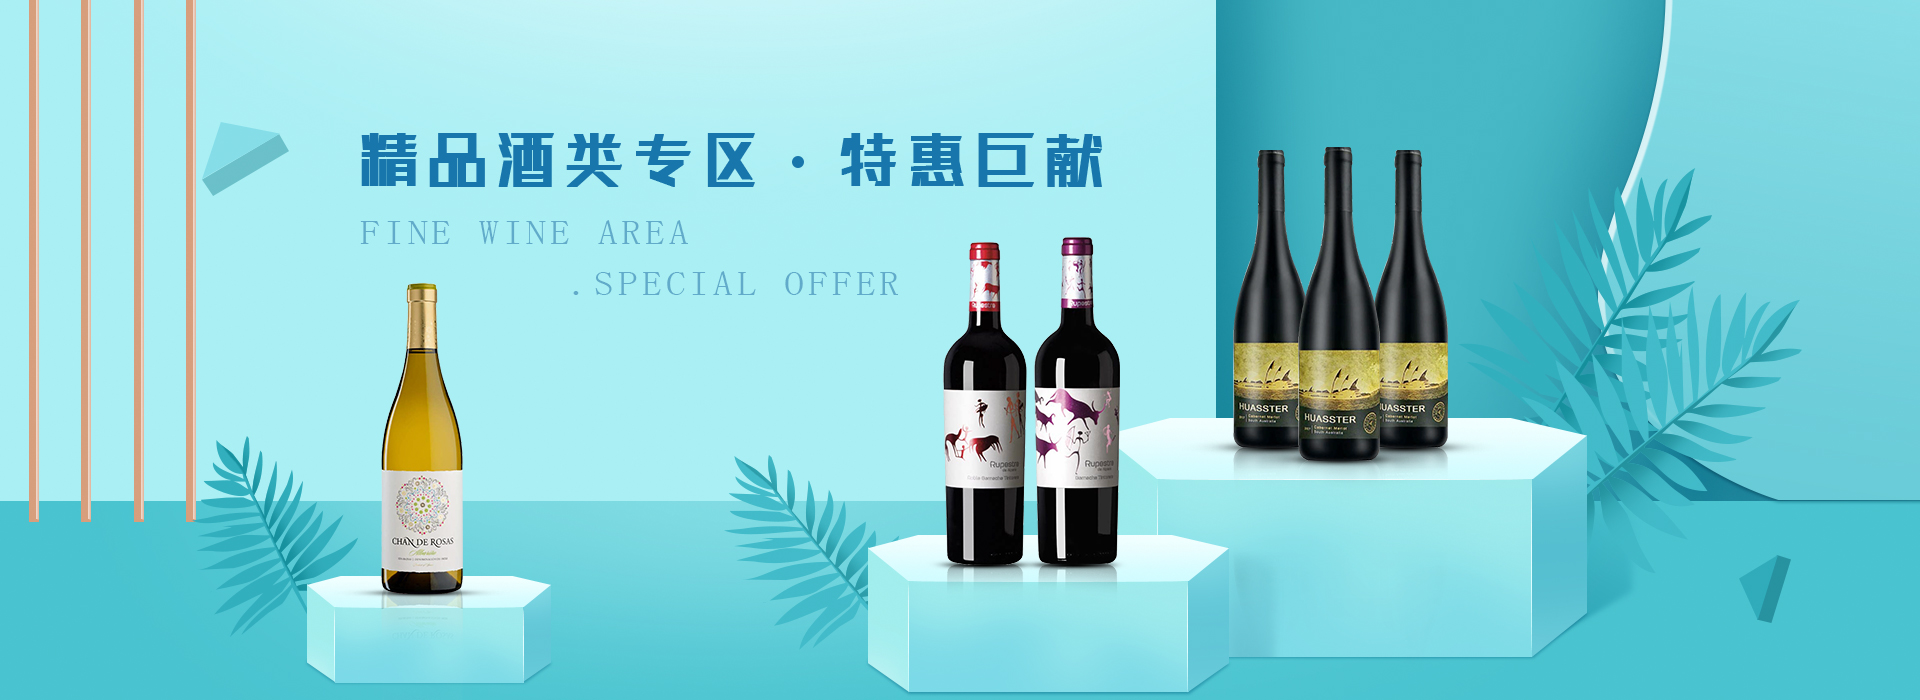 红酒团购_公司接待葡萄酒、香槟供应商-福莱沃酒业广州有限公司